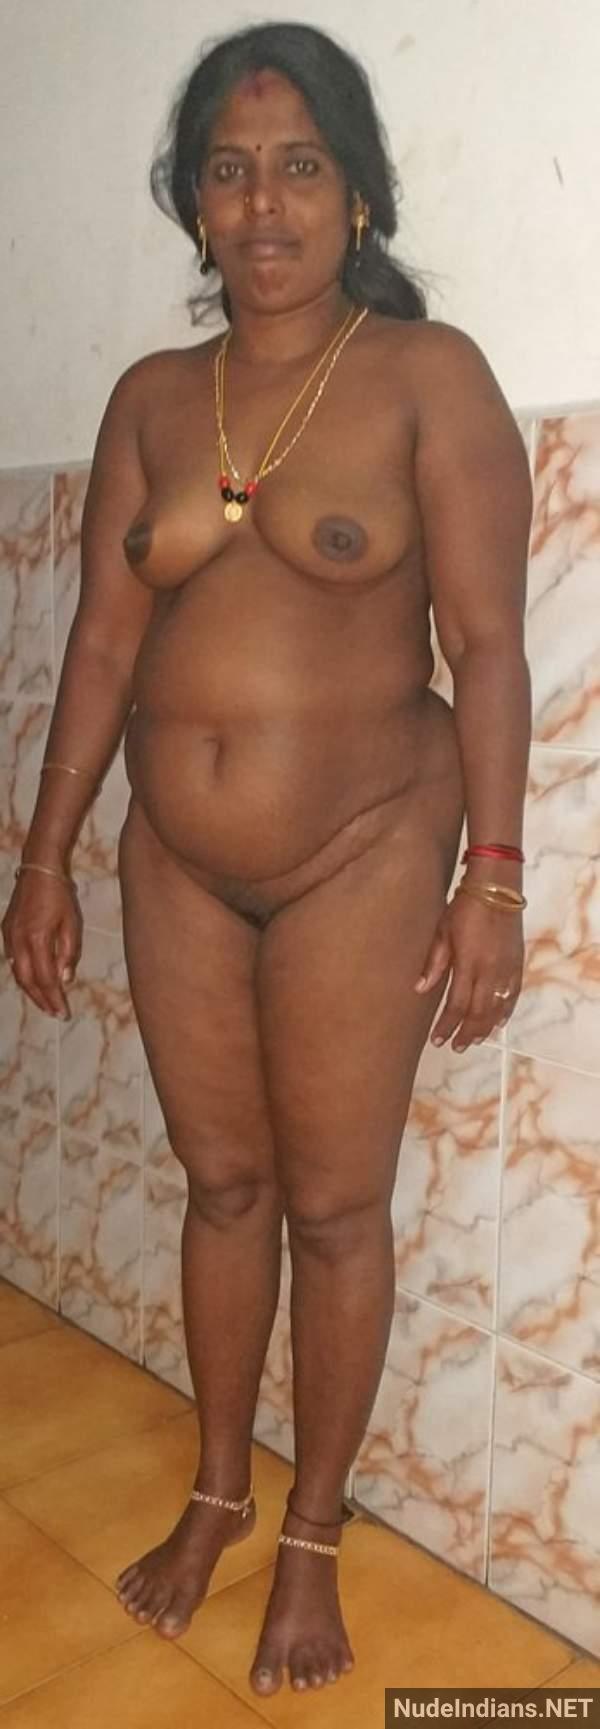 real mallu bhabhi nude selfie leaked - 1